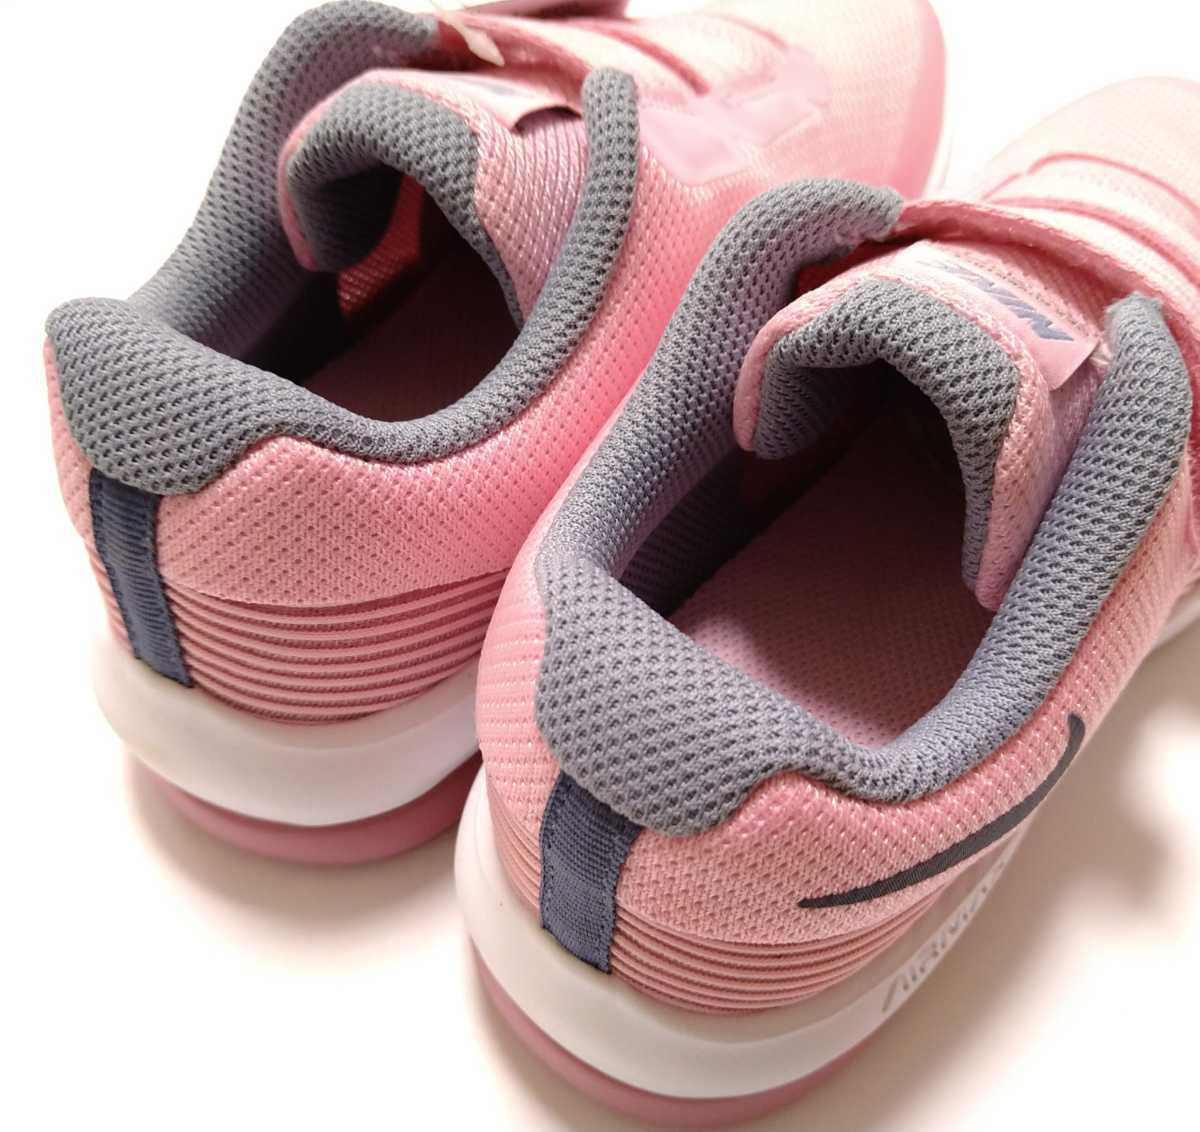  бесплатная доставка *NIKE спортивные туфли 21cm air max Ad Vantage Nike Kids Junior розовый спортивная обувь обувь женщина . девочка с ящиком 21.0cm